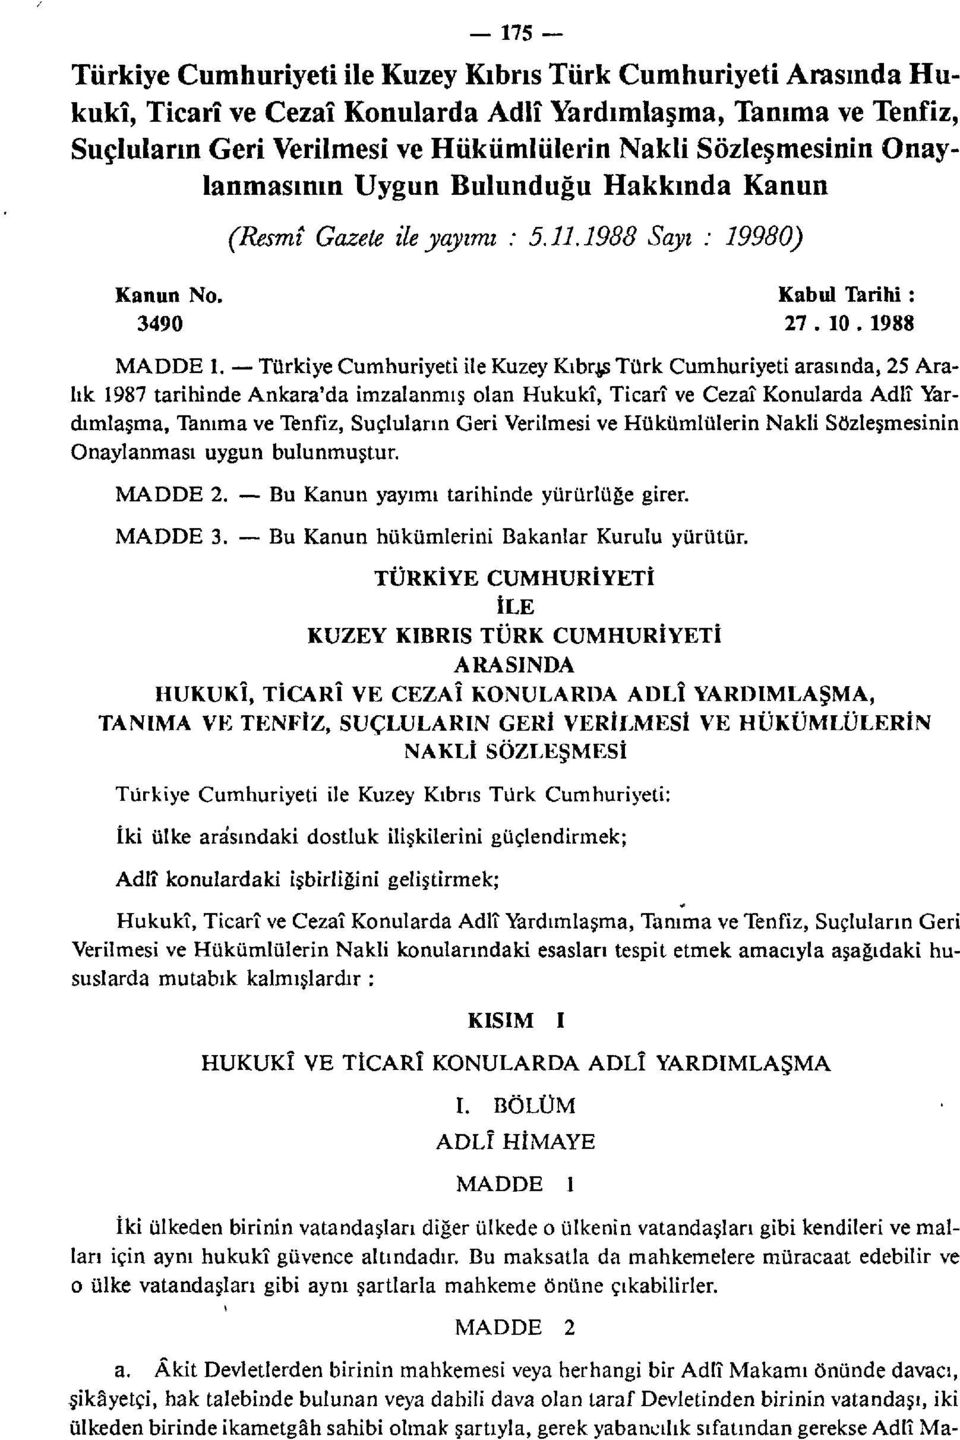 Türkiye Cumhuriyeti ile Kuzey Kıbrıs Türk Cumhuriyeti arasında, 25 Aralık 1987 tarihinde Ankara'da imzalanmış olan Hukukî, Ticarî ve Cezaî Konularda Adlî Yardımlaşma, Tanıma ve Tenfiz, Suçluların